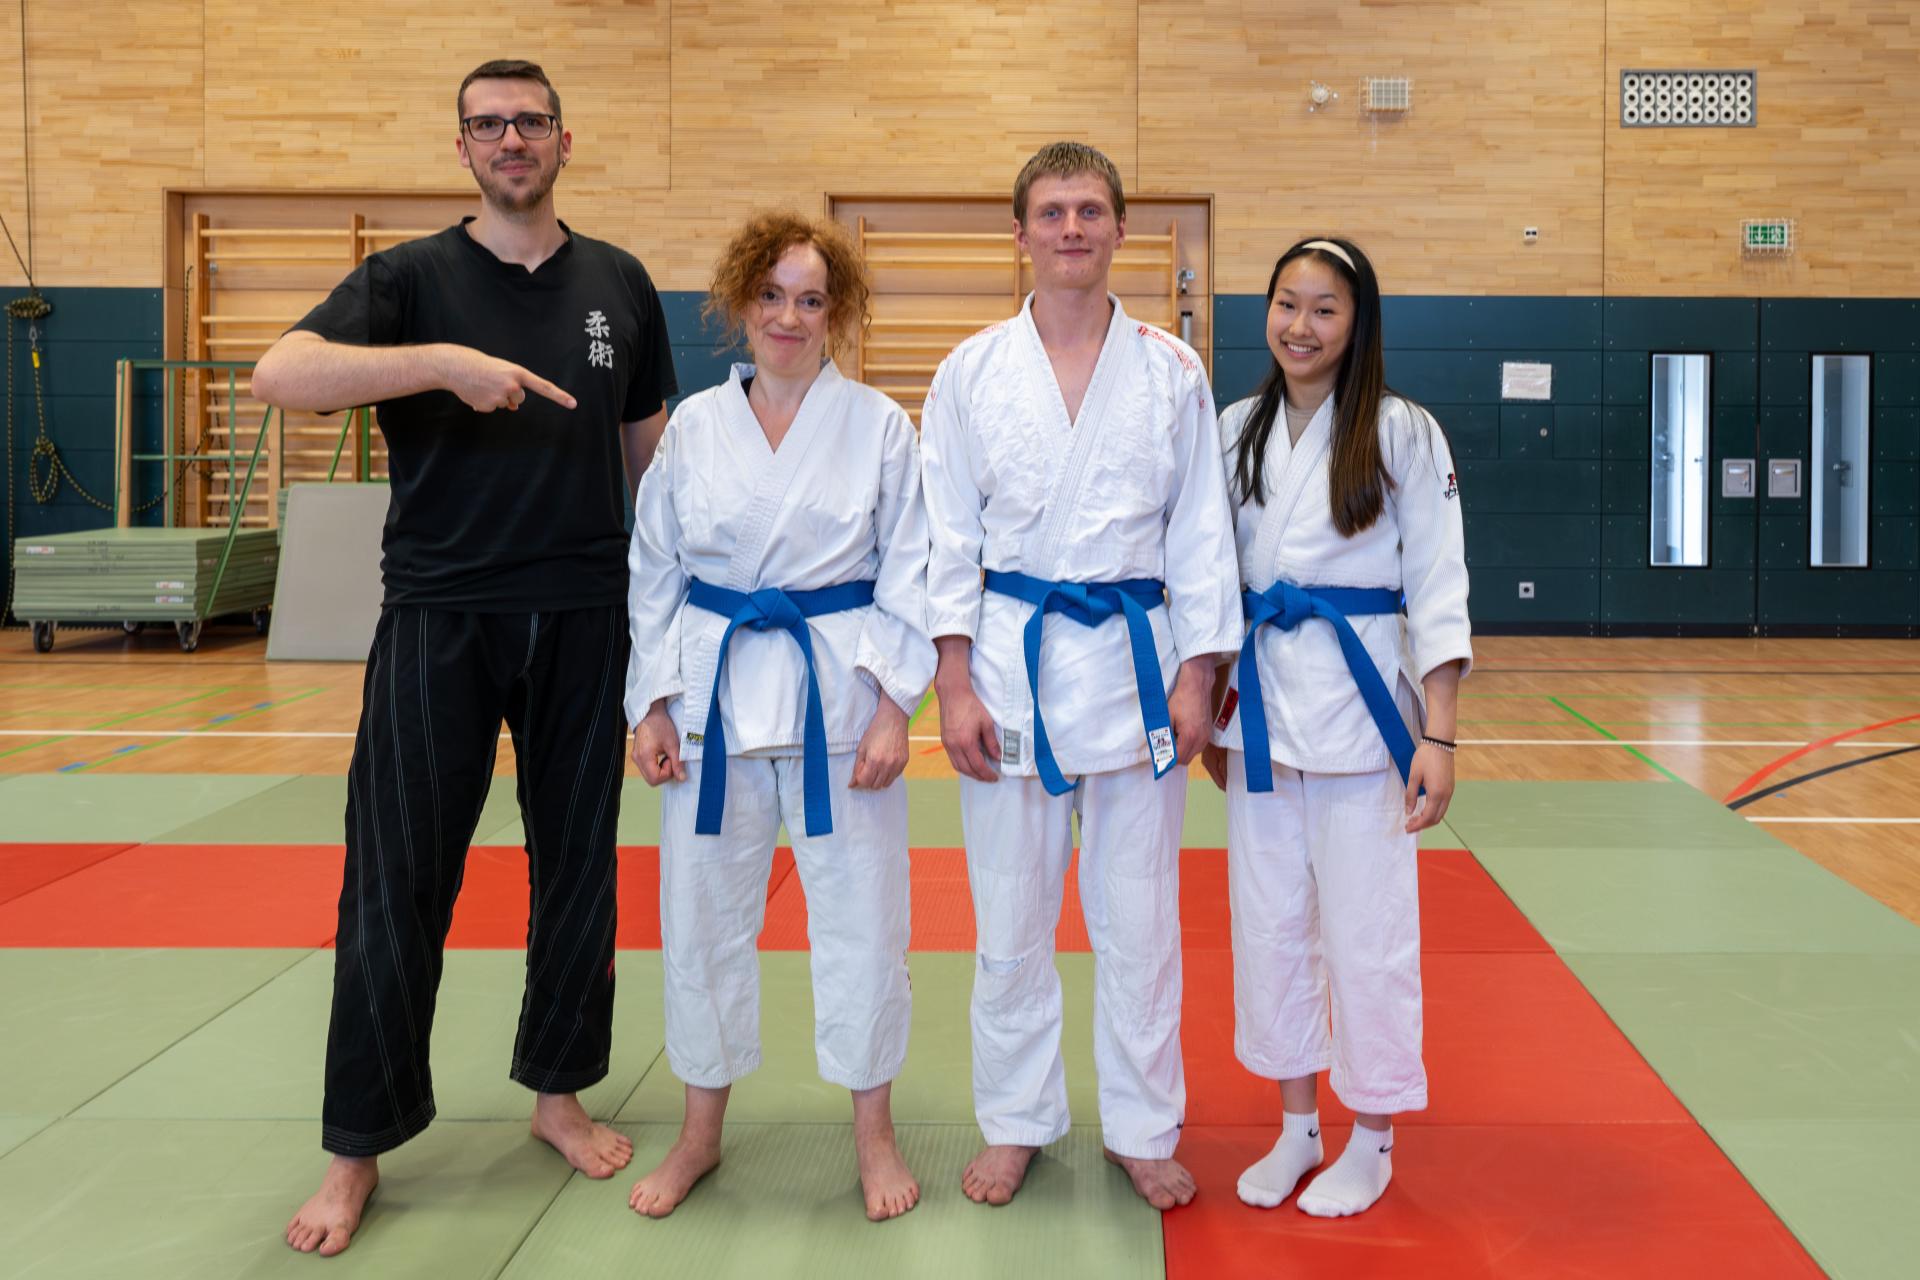 die neuen 'Blaugurte' (v. l. n. r. Alexandra, Leo, Evelyn) mit ihrem Trainer Jerome (ganz links)